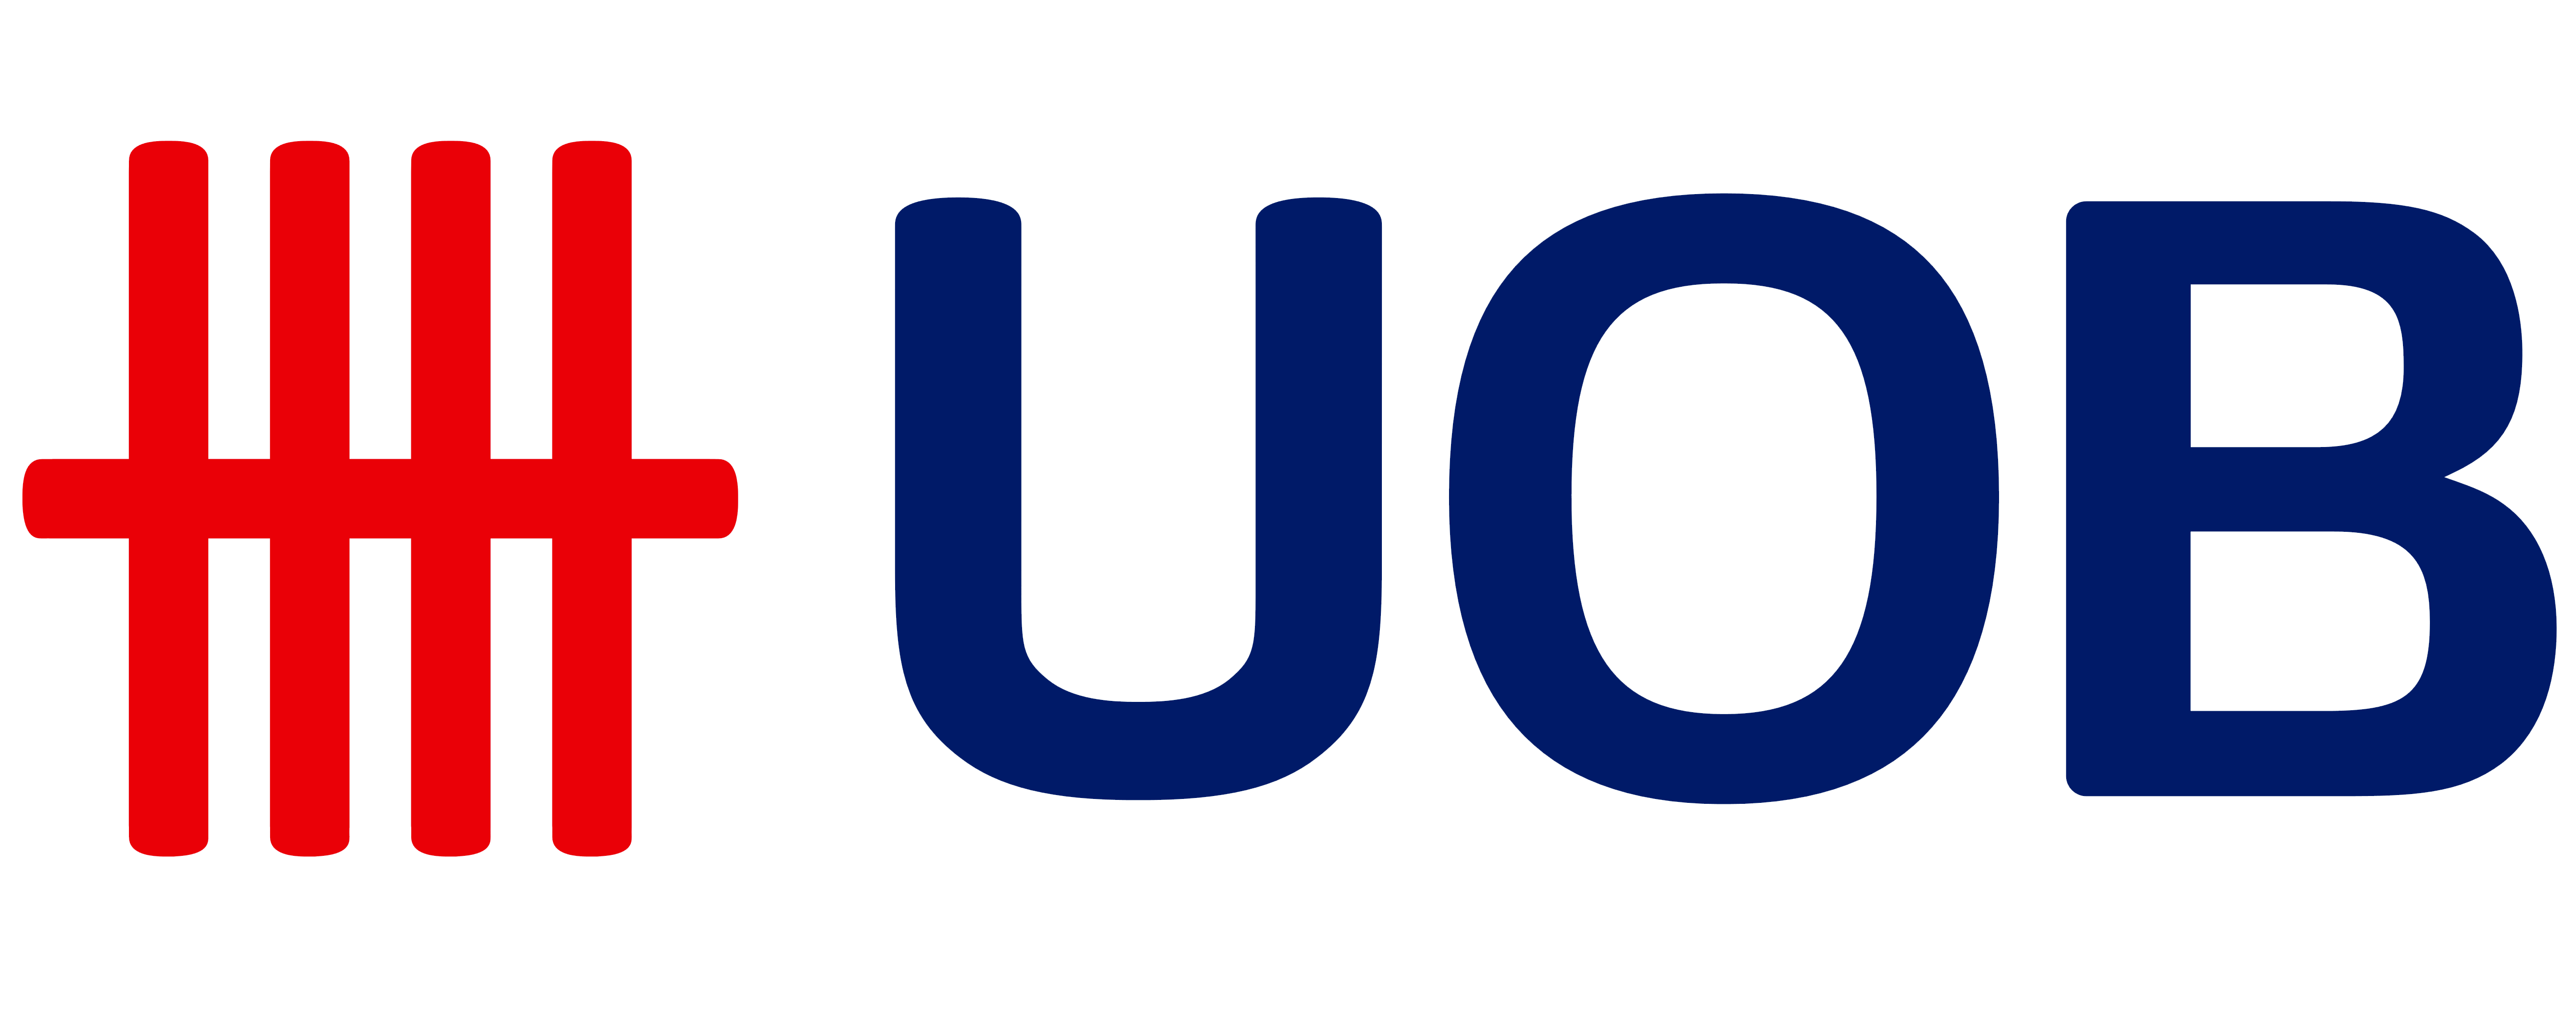 UOB - United Overseas Bank logo, logotype